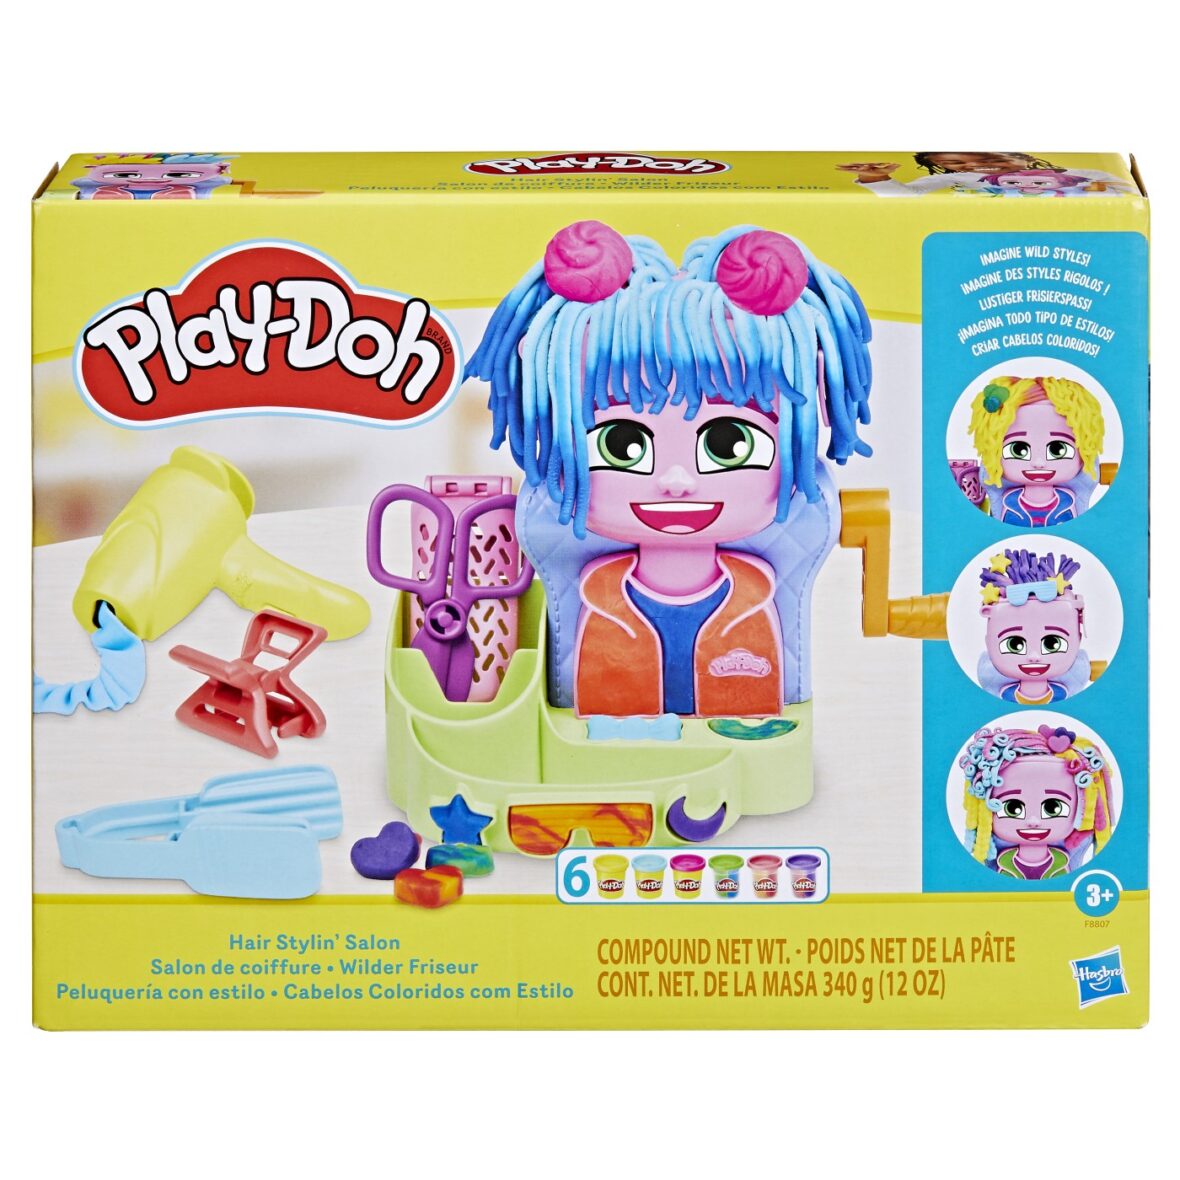 Play-doh Salon De Coafura